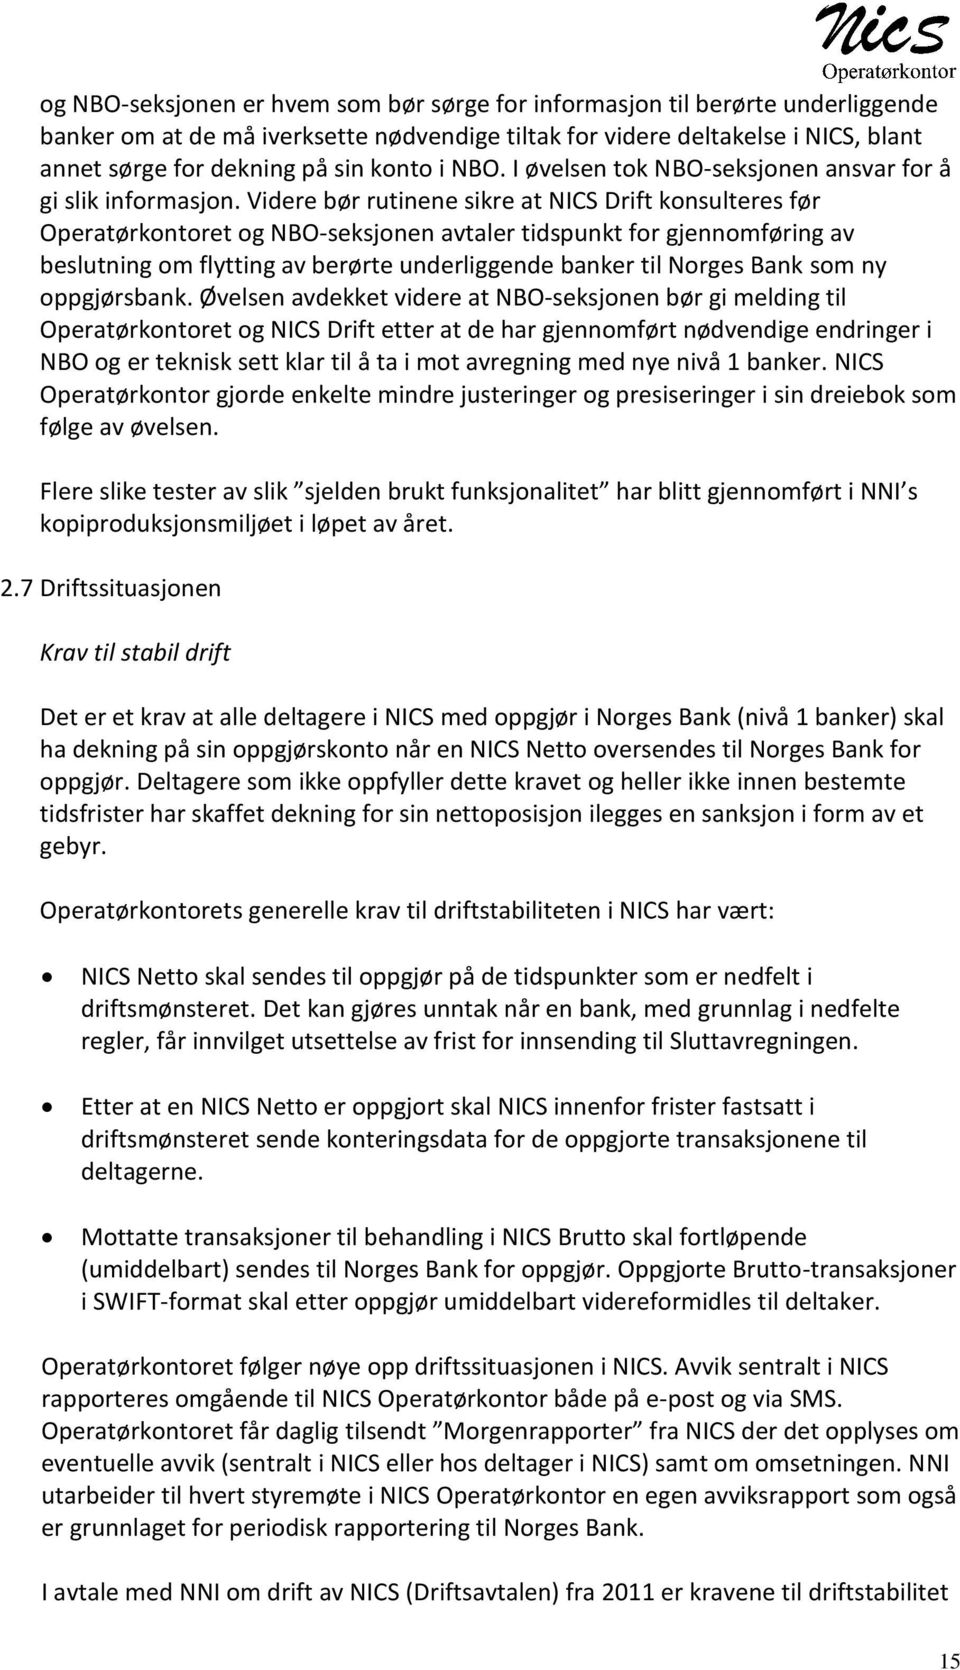 Videre bør rutinene sikre at NICS Drift konsulteres før Operatørkontoret og NBO-seksjonen avtaler tidspunkt for gjennomføring av beslutning om flytting av berørte underliggende banker til Norges Bank